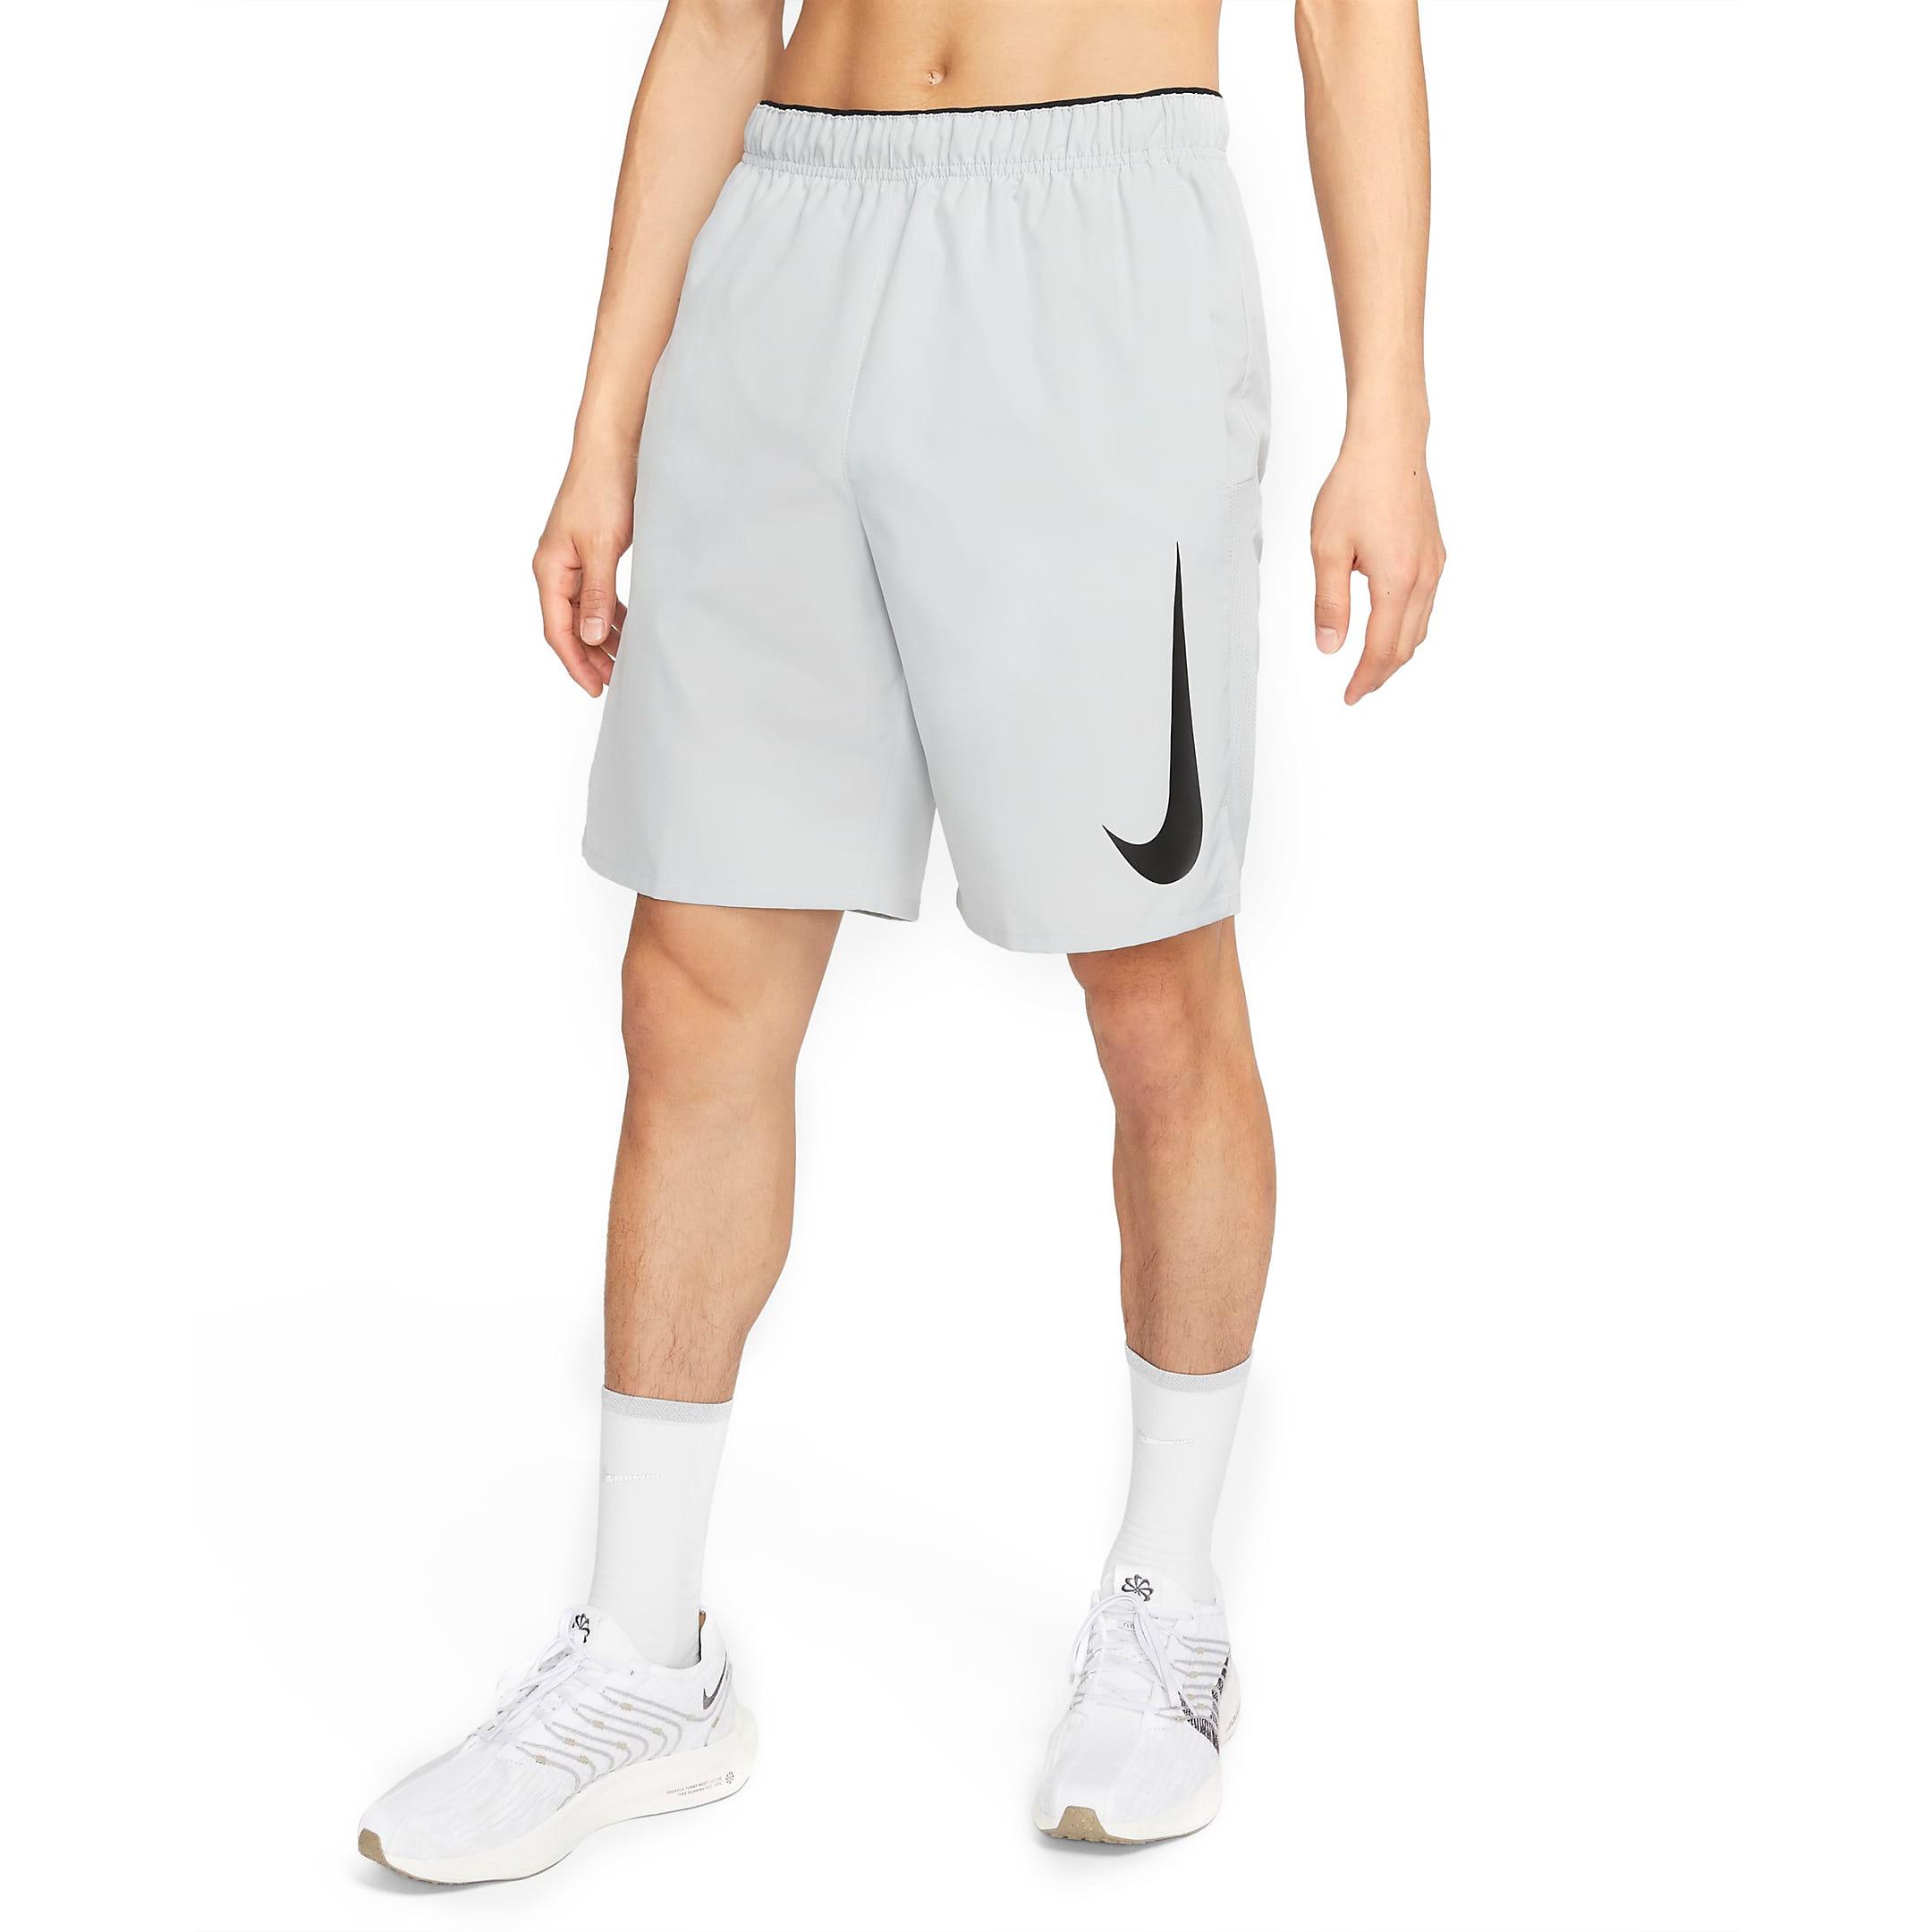 Шорты Nike Dri-fit Challenger Running, светло-серый/черный